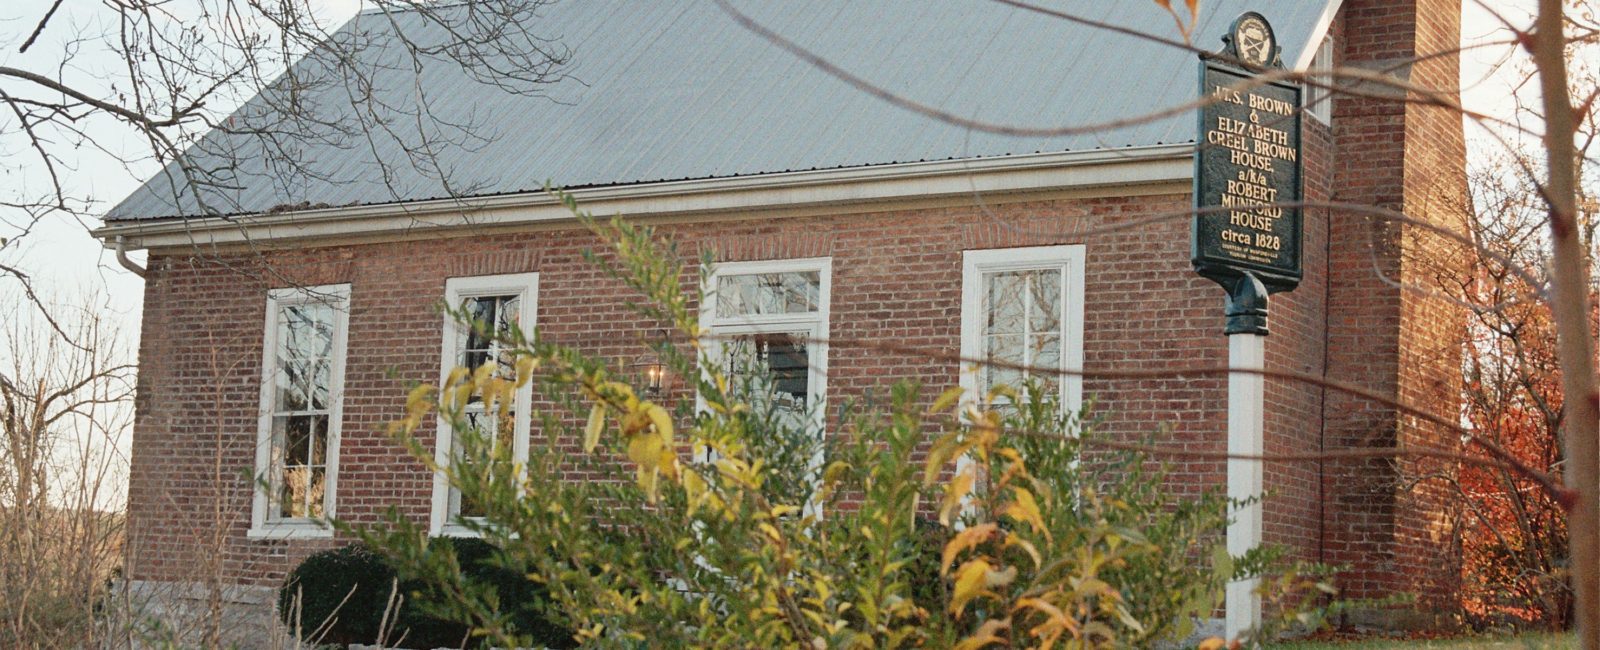 J.T.S. & Elizabeth Creel-Brown House, 1825